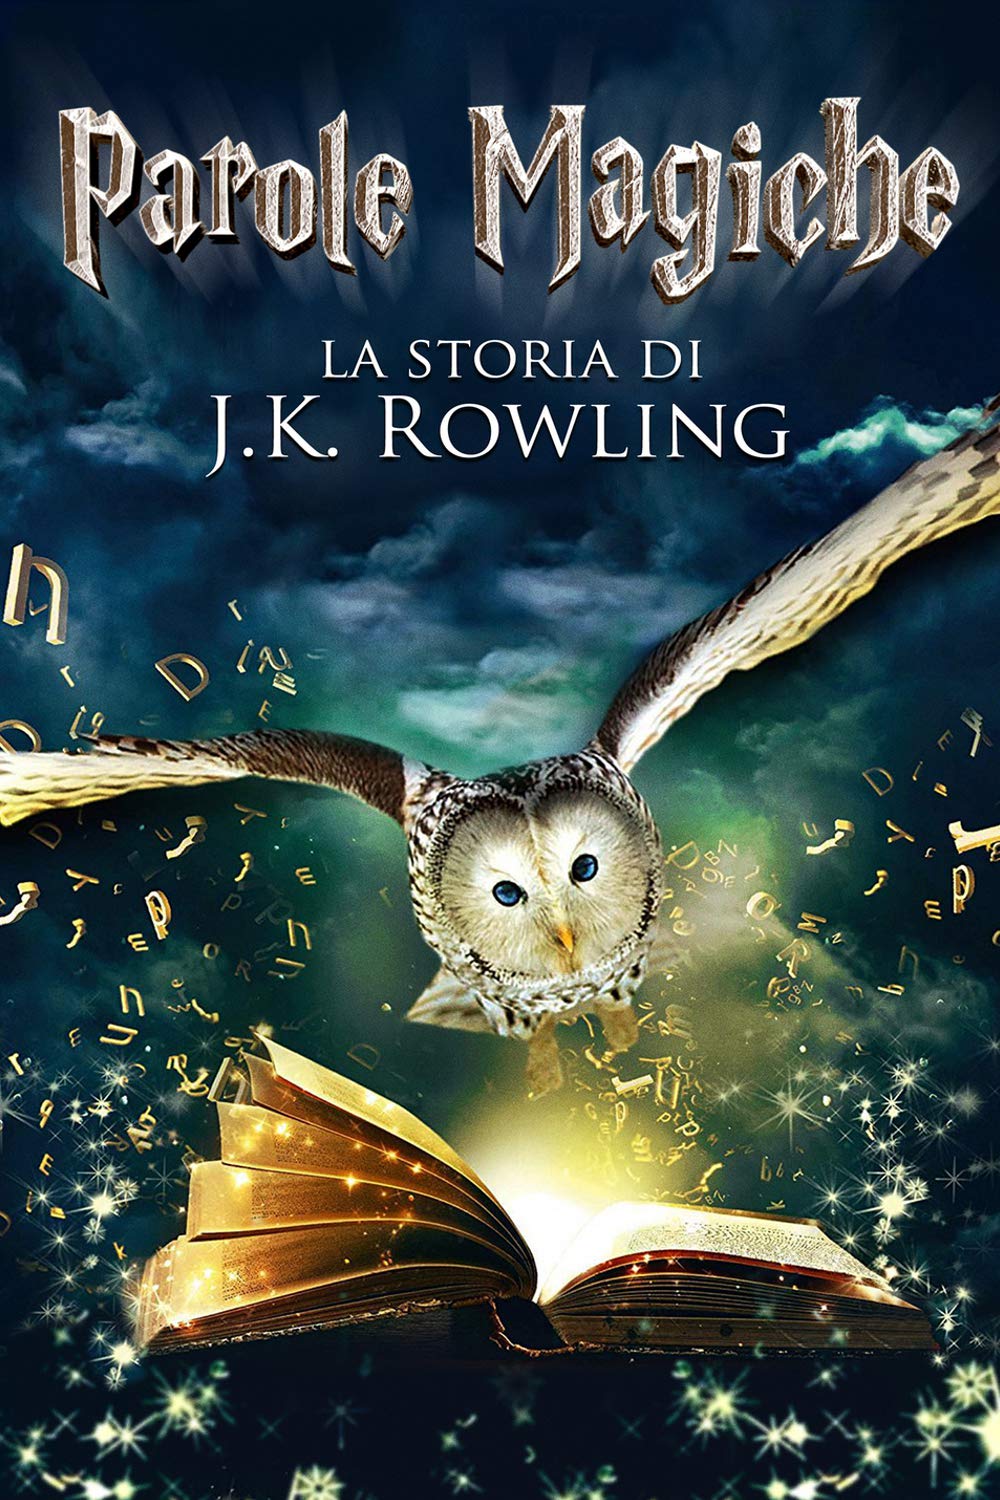 Parole magiche – La storia di J.K. Rowling [HD] (2011)